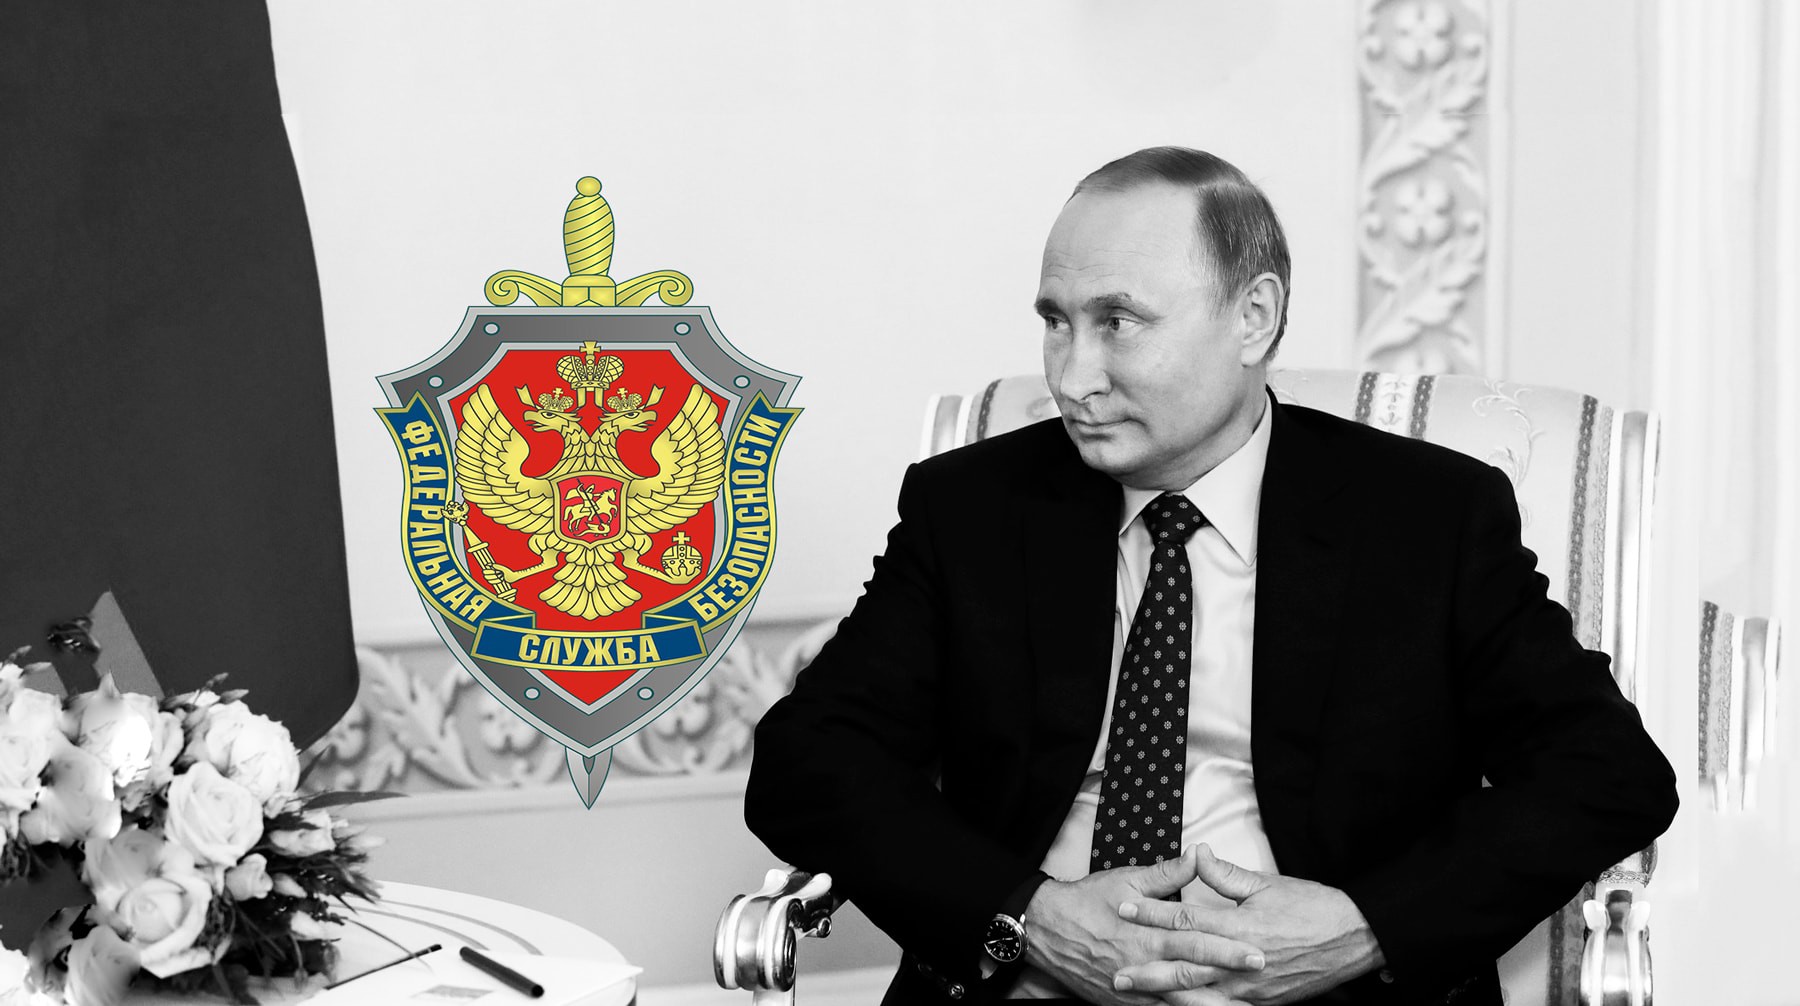 Dailystorm - «Порядка не хватает». Зачем Владимир Путин усиливает свою администрацию ФСБ